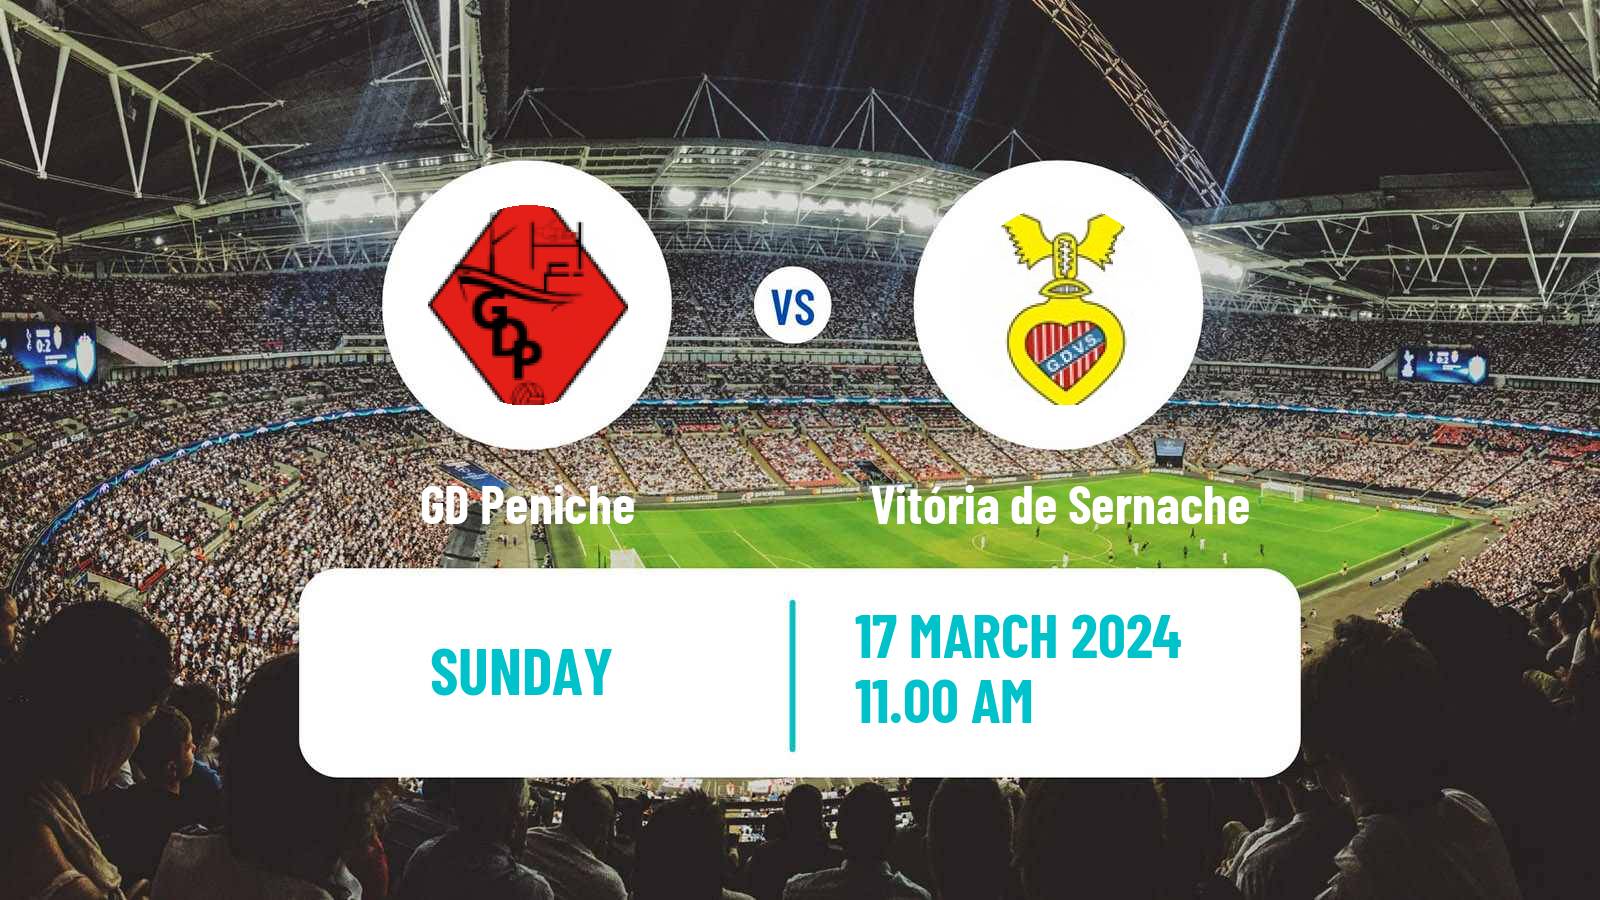 Soccer Campeonato de Portugal - Group C Peniche - Vitória de Sernache